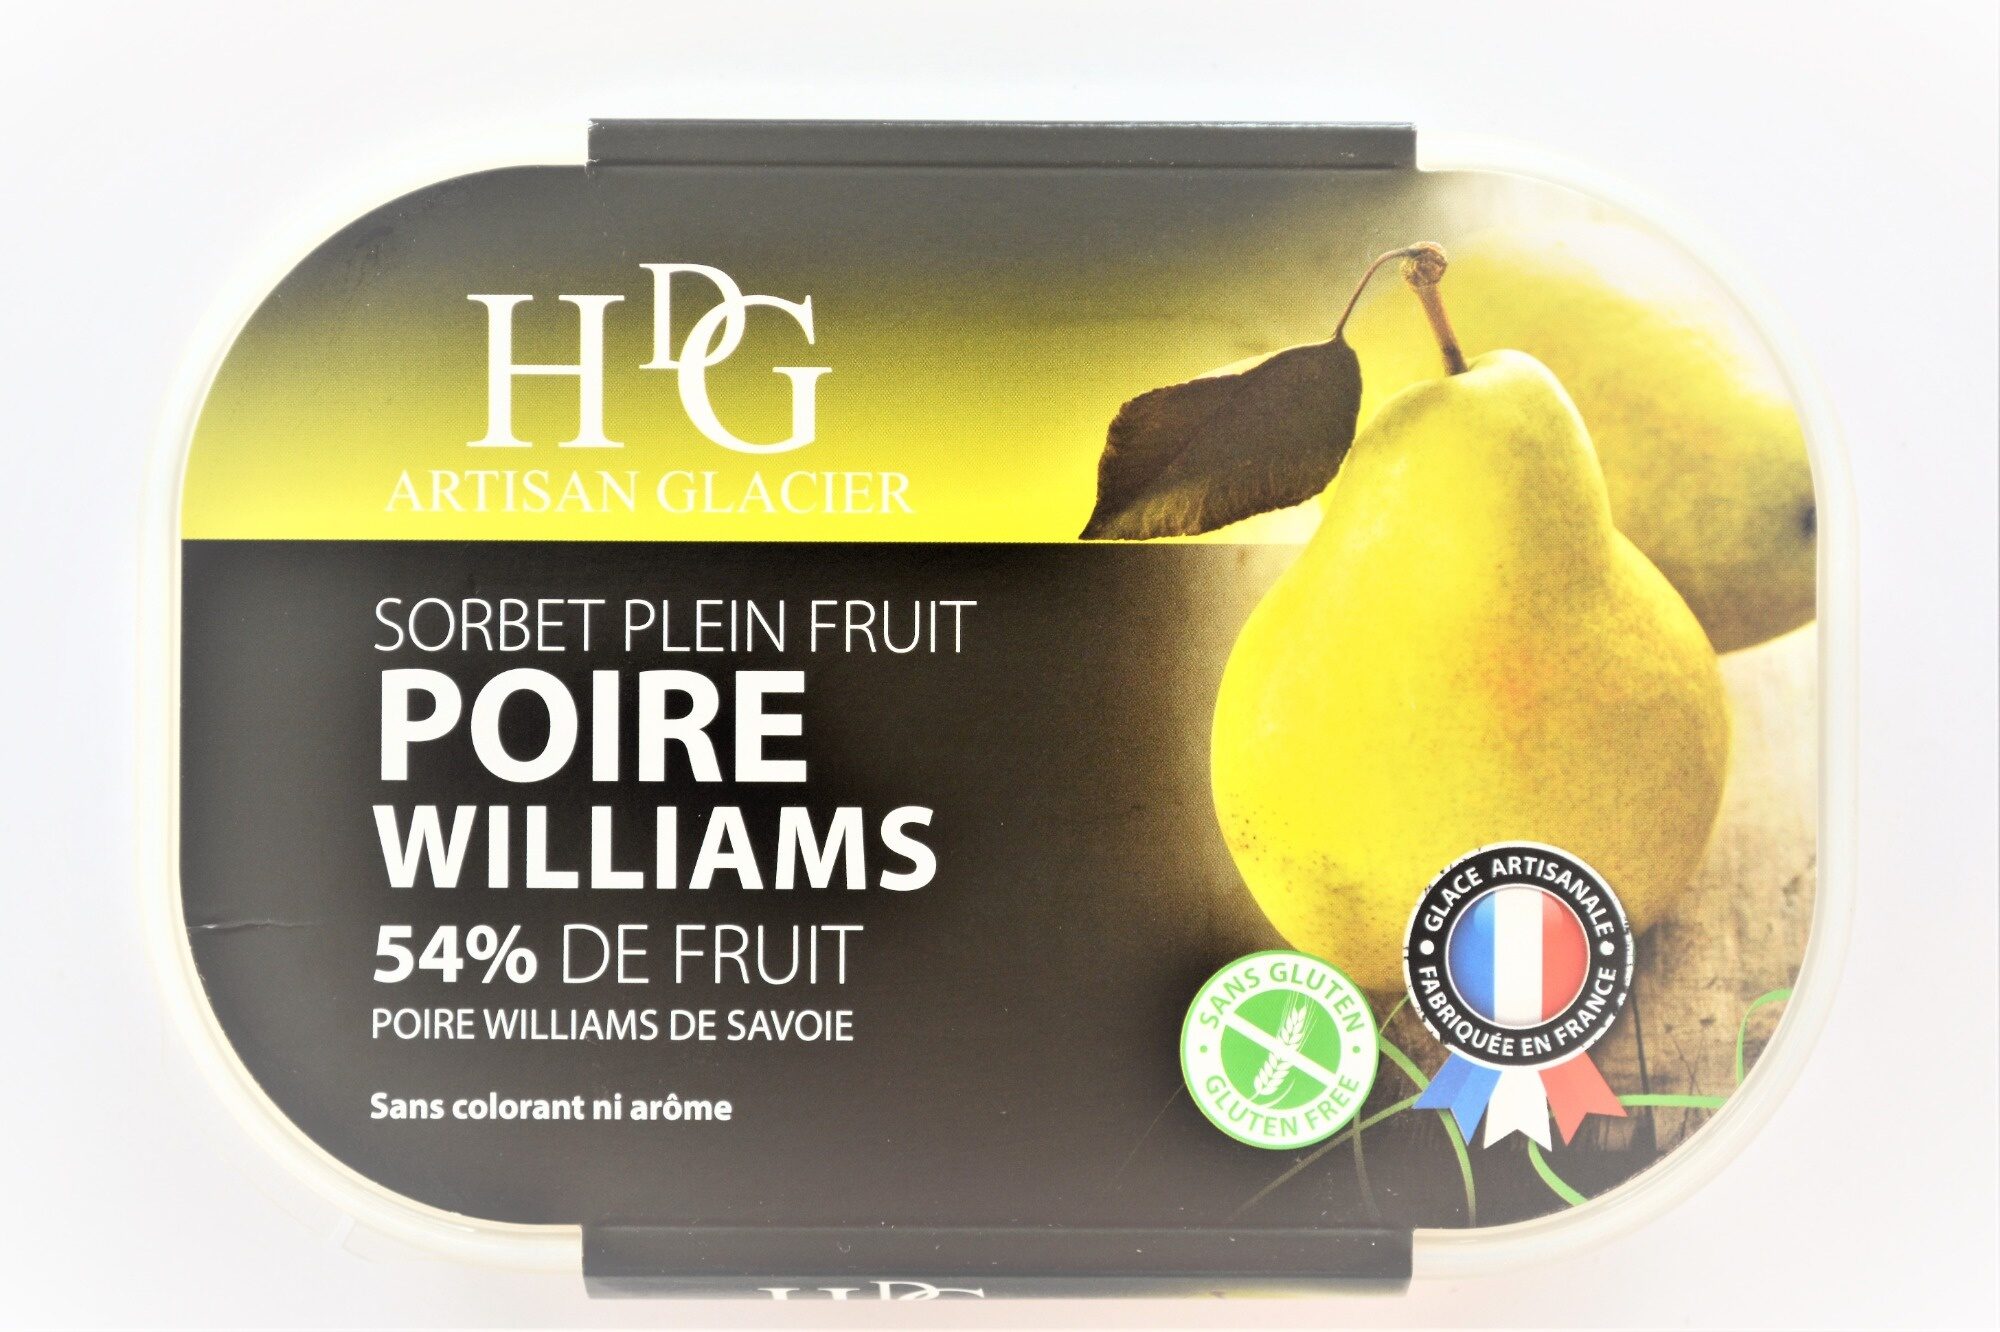 Sorbet plein fruit POIRE WILLIAMS, 54% de fruit - Product - fr